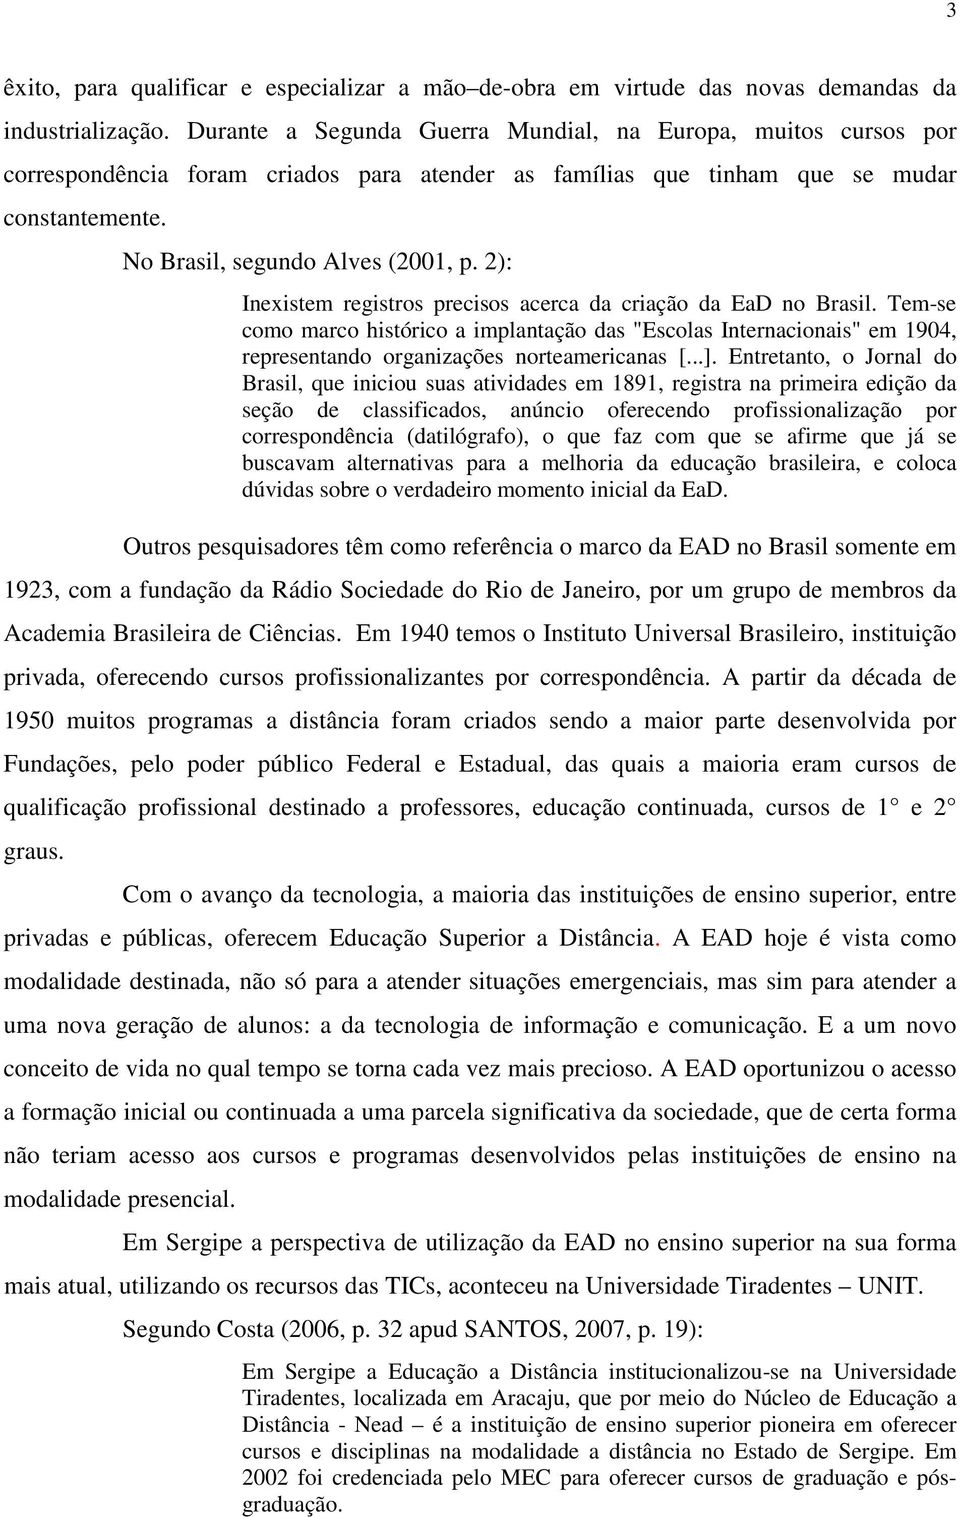 2): Inexistem registros precisos acerca da criação da EaD no Brasil. Tem-se como marco histórico a implantação das "Escolas Internacionais" em 1904, representando organizações norteamericanas [...].